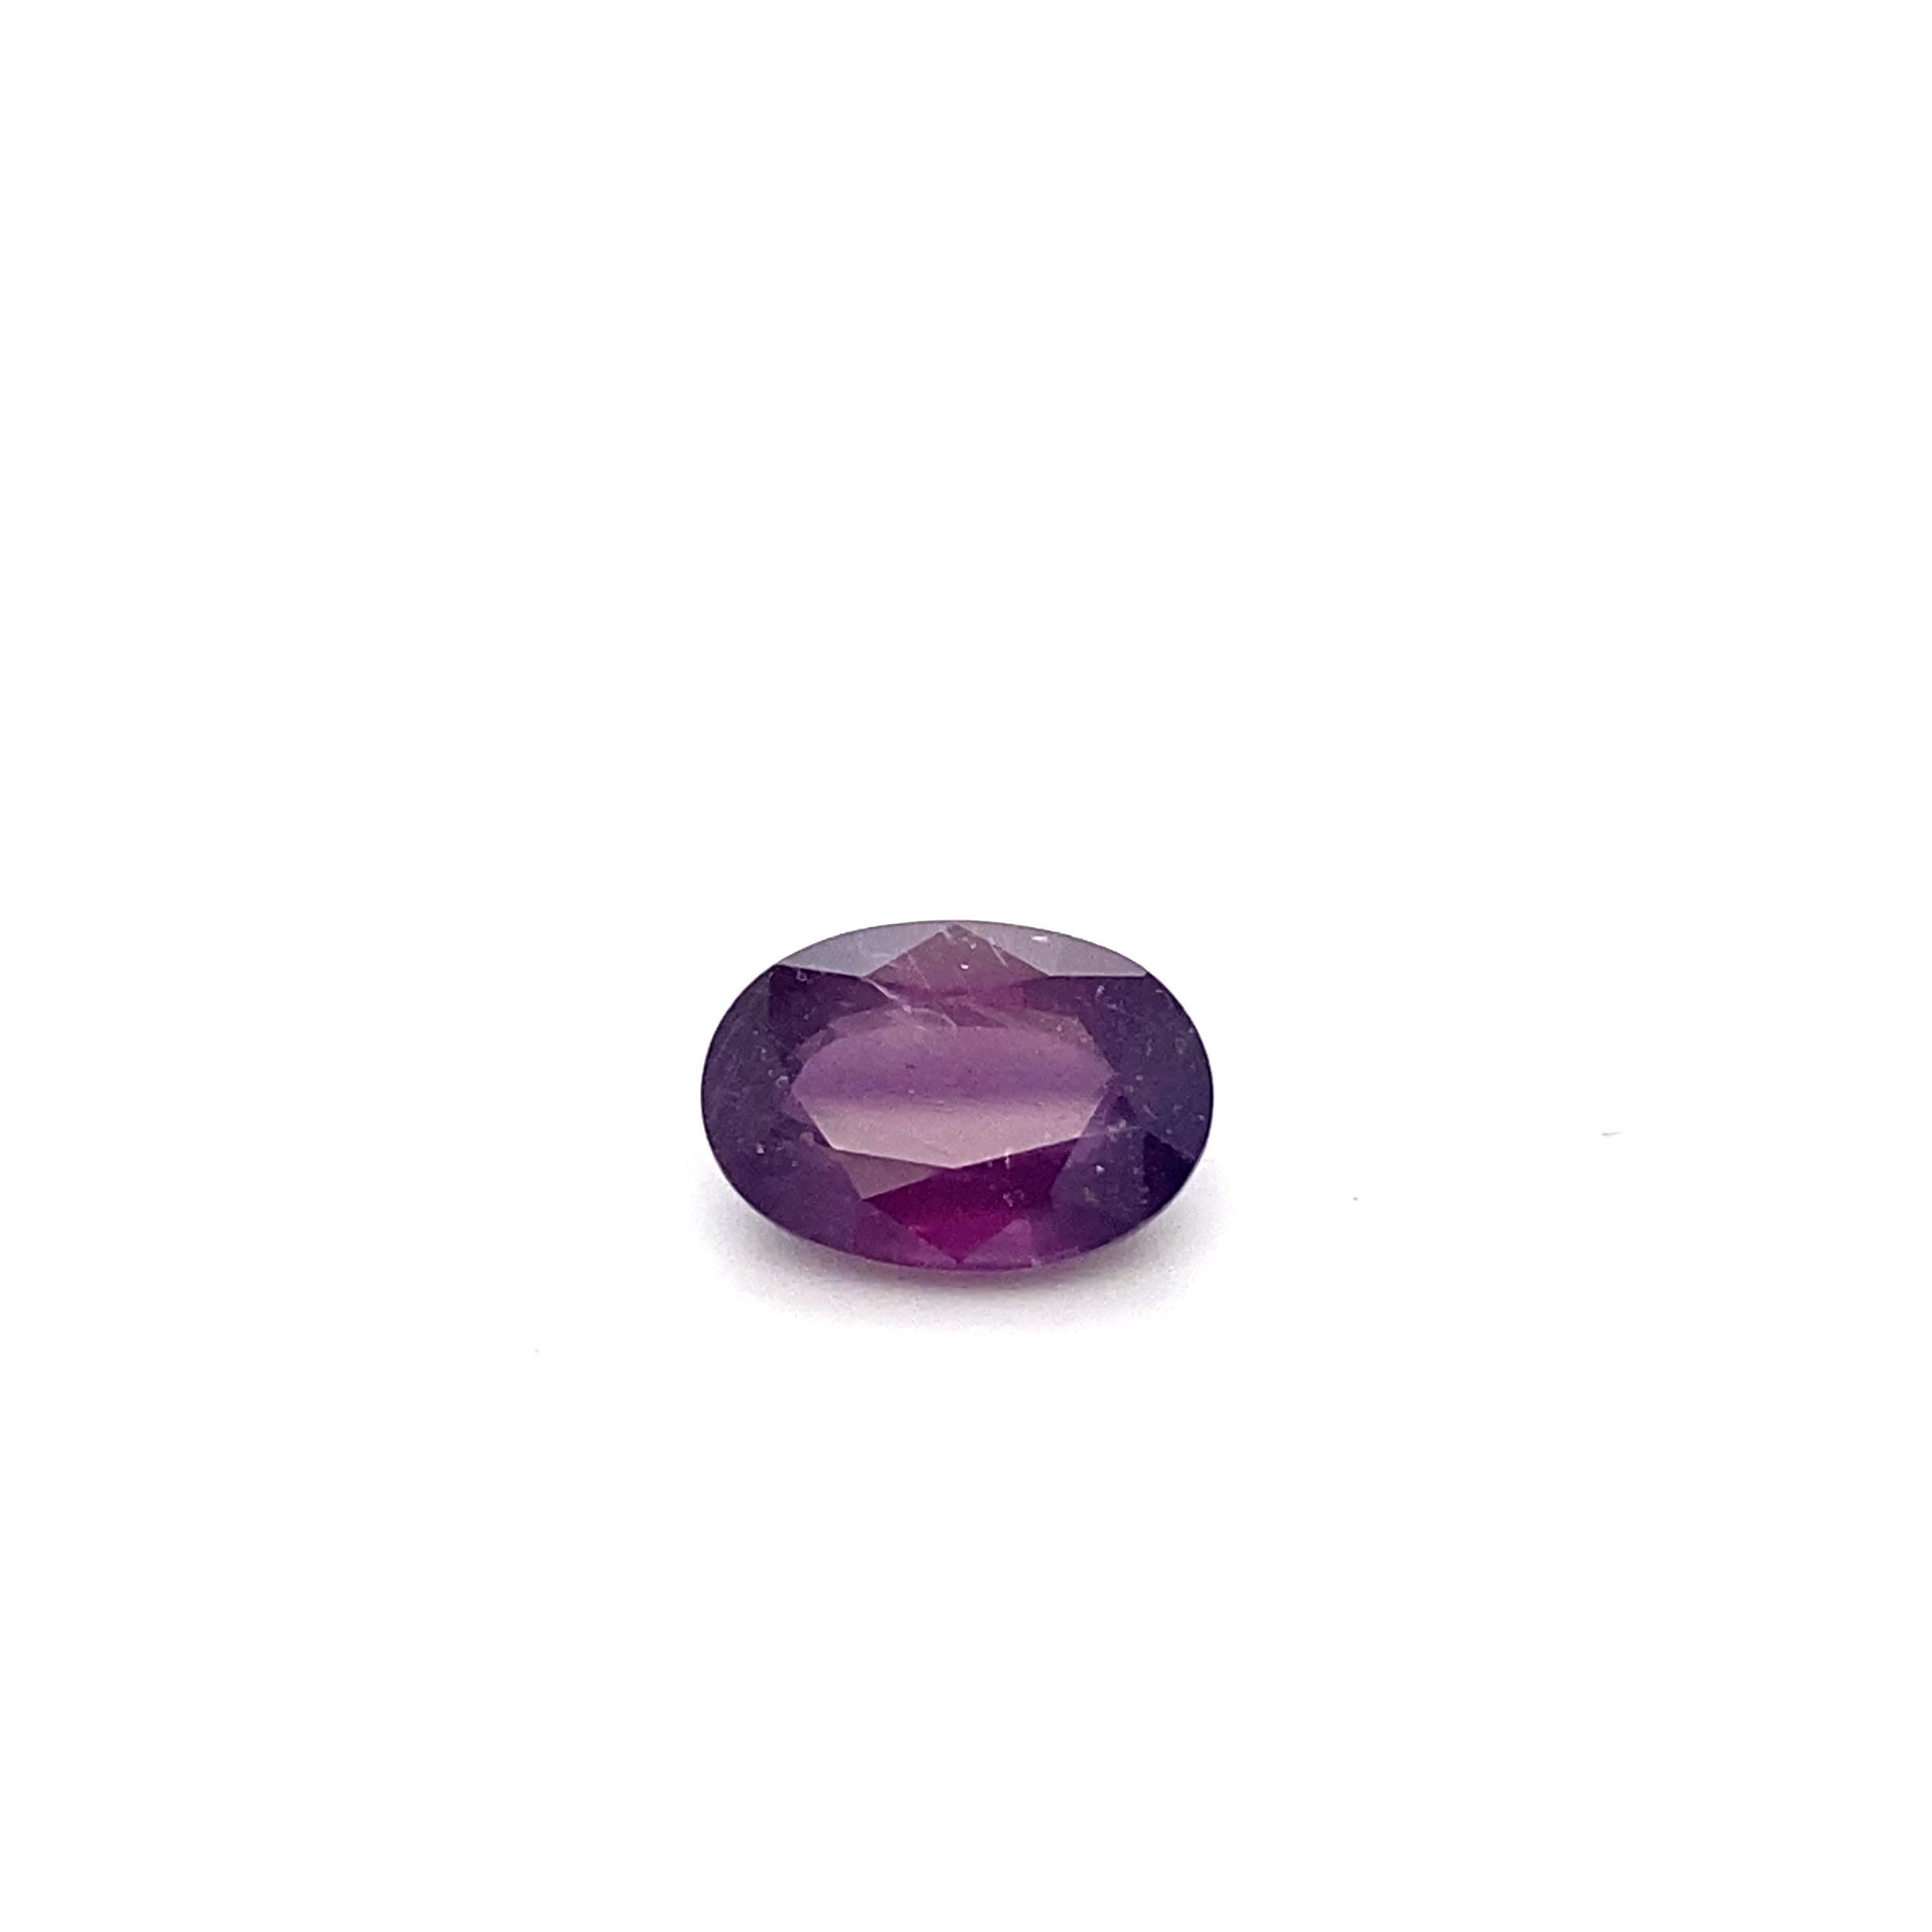 GIA-zertifiziert 5,94 Karat ovale Form natürlichen rosa lila Saphir ist ein wirklich atemberaubend lose Edelstein. Ursprünglich aus Ostafrika stammend und NO HEAT macht es zu einem sehr begehrten Stück. Er wird von erfahrenen Handwerkern von Hand im